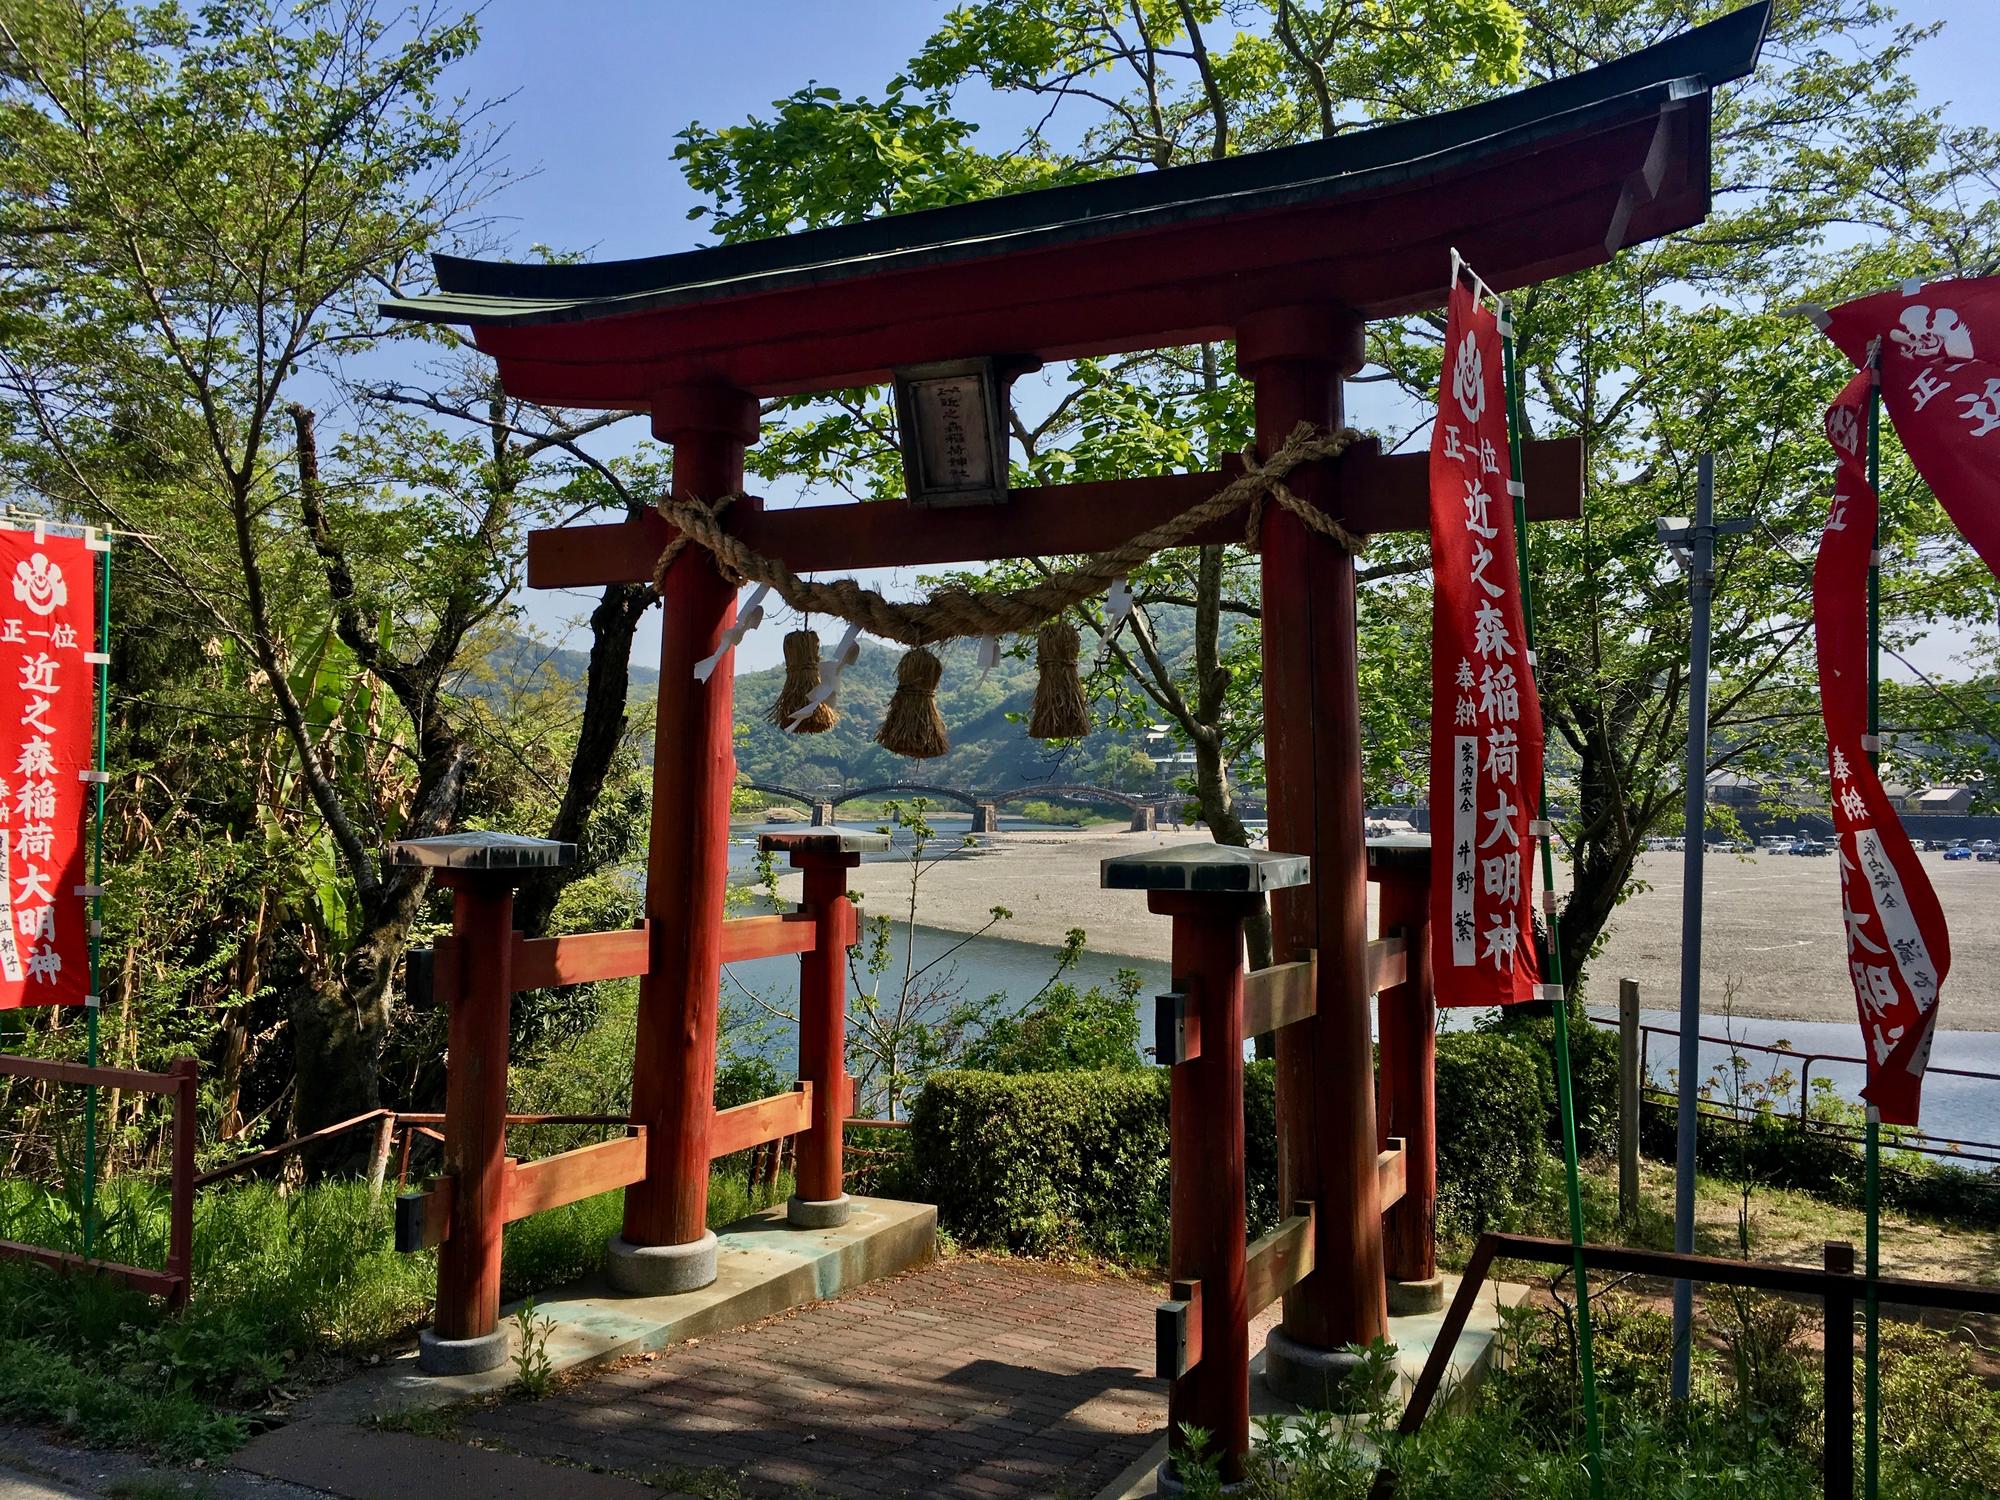 🇯🇵 Iwakuni, Japan, April 2019.